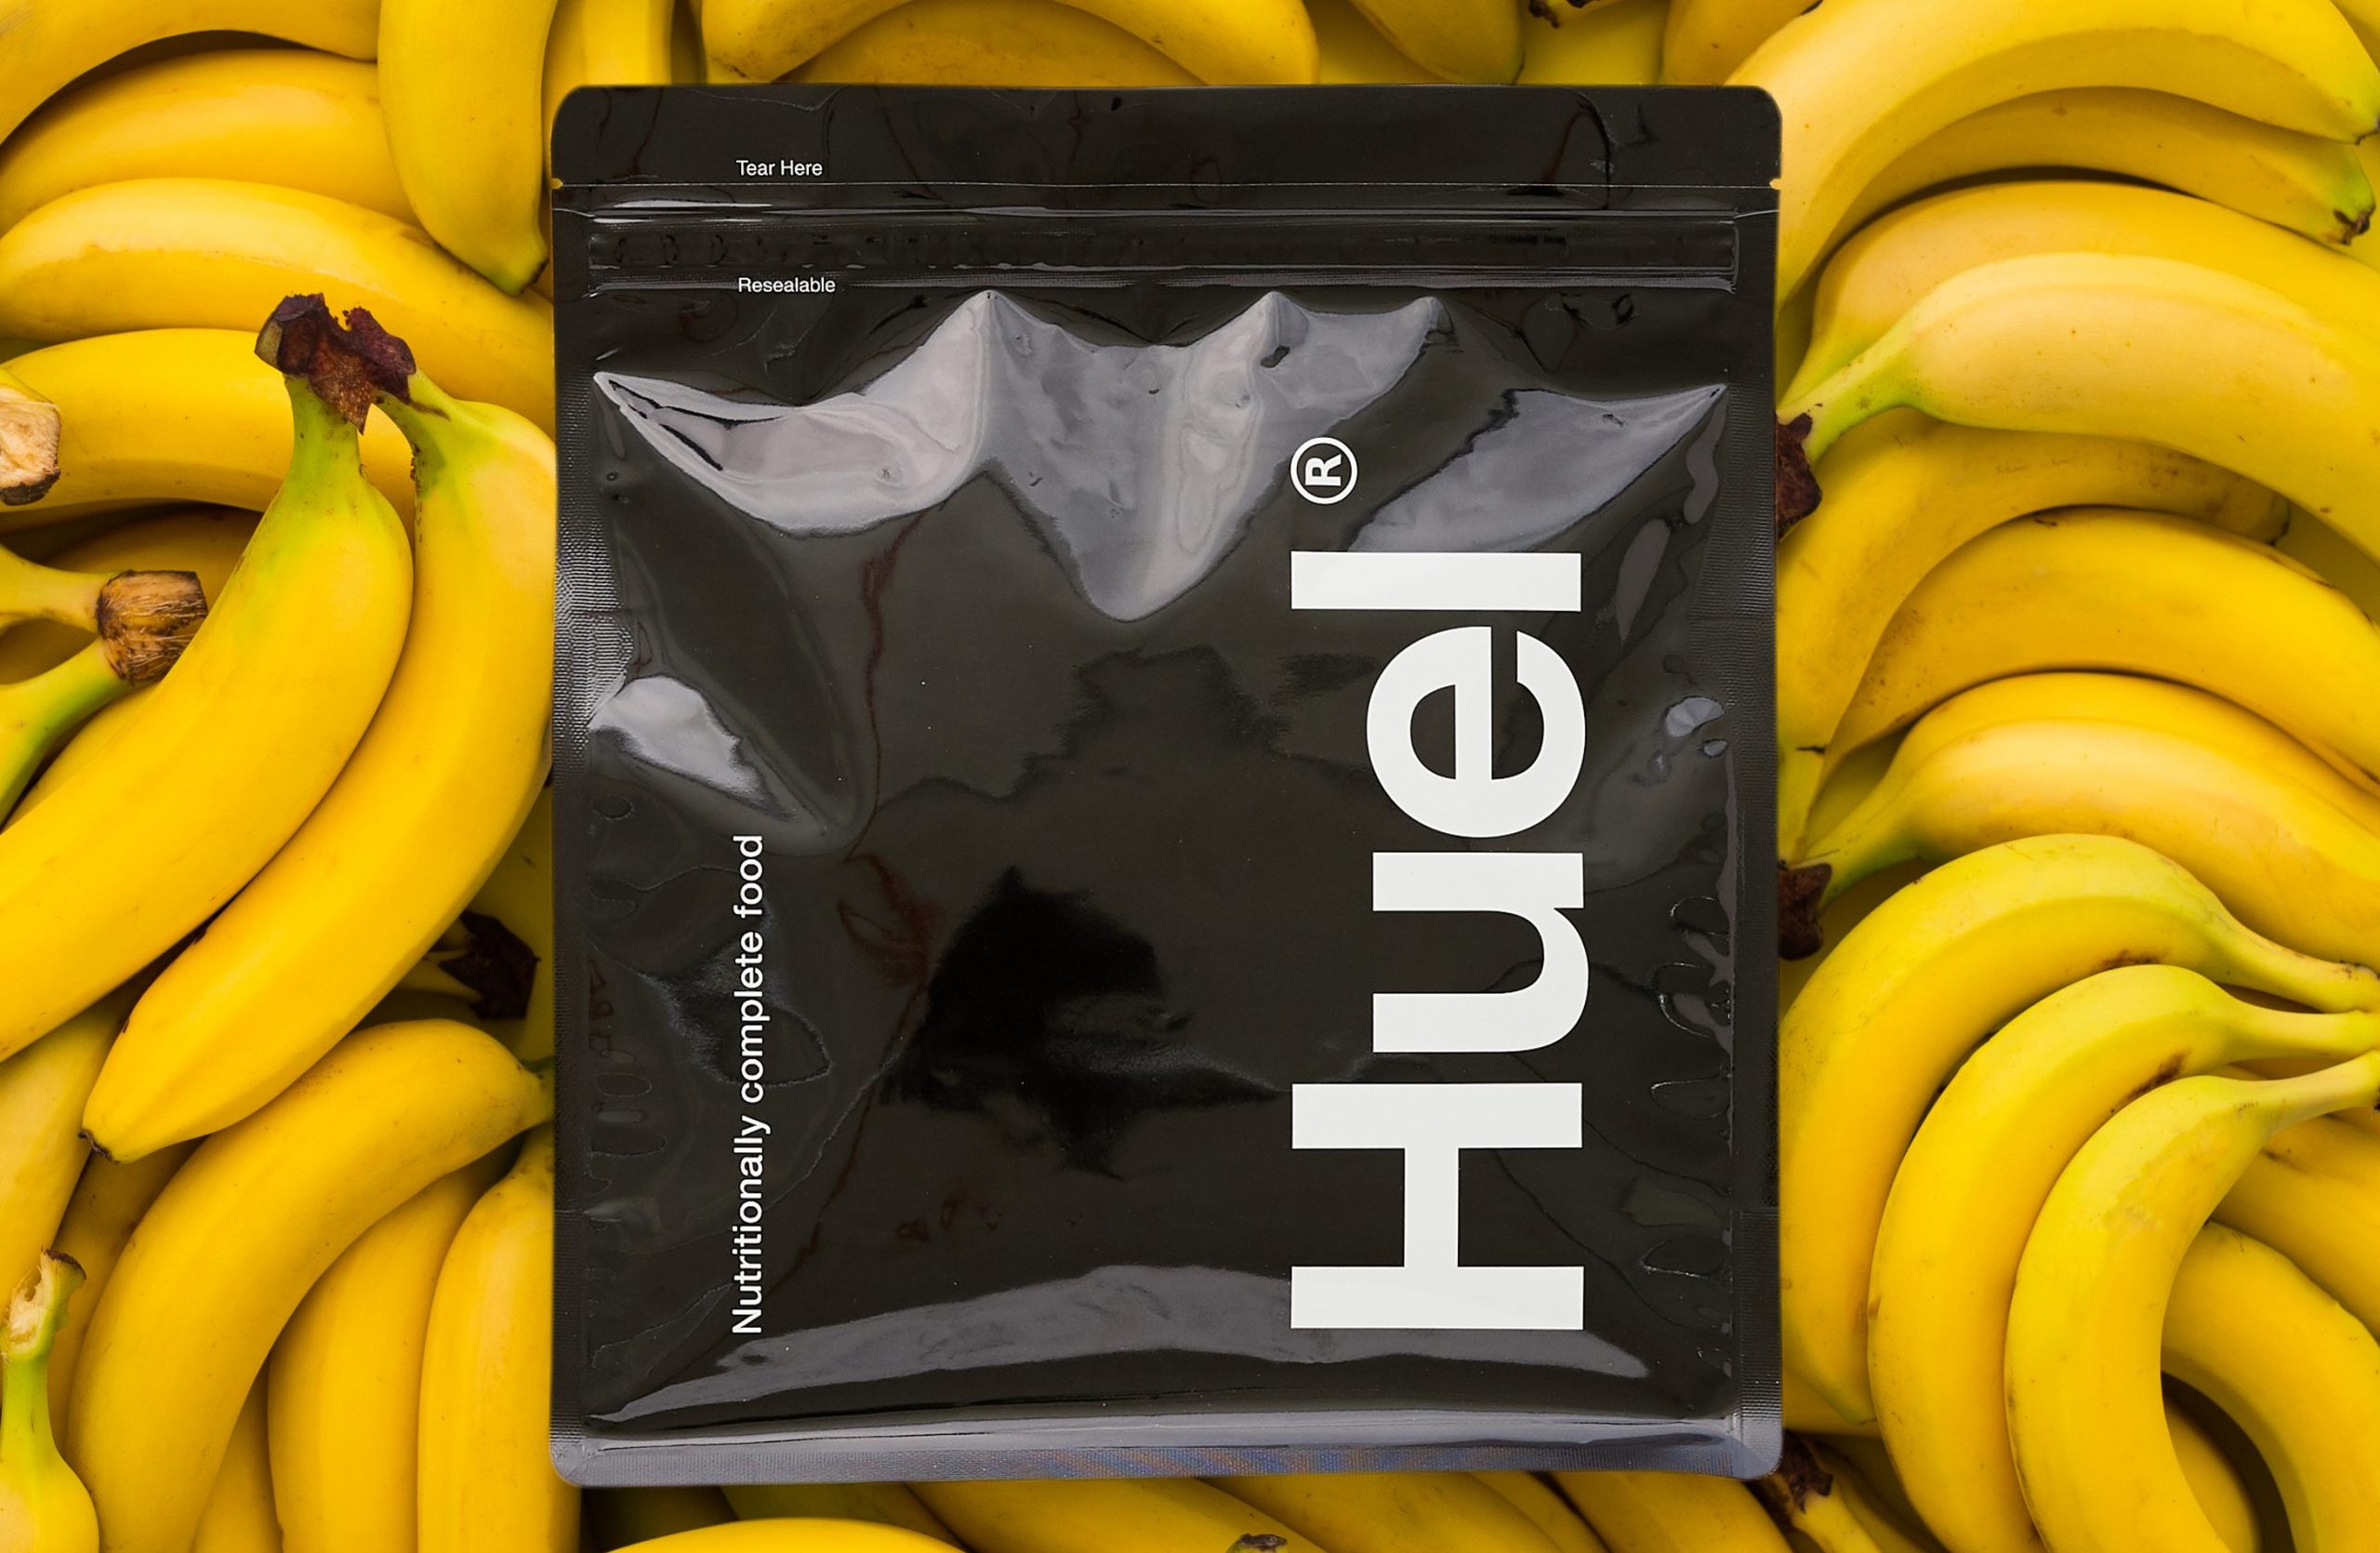 https://fmcgmagazine.co.uk/wp-content/uploads/2020/12/Huel-Shoot-18-bananas-scaled-e1608218356634.jpg